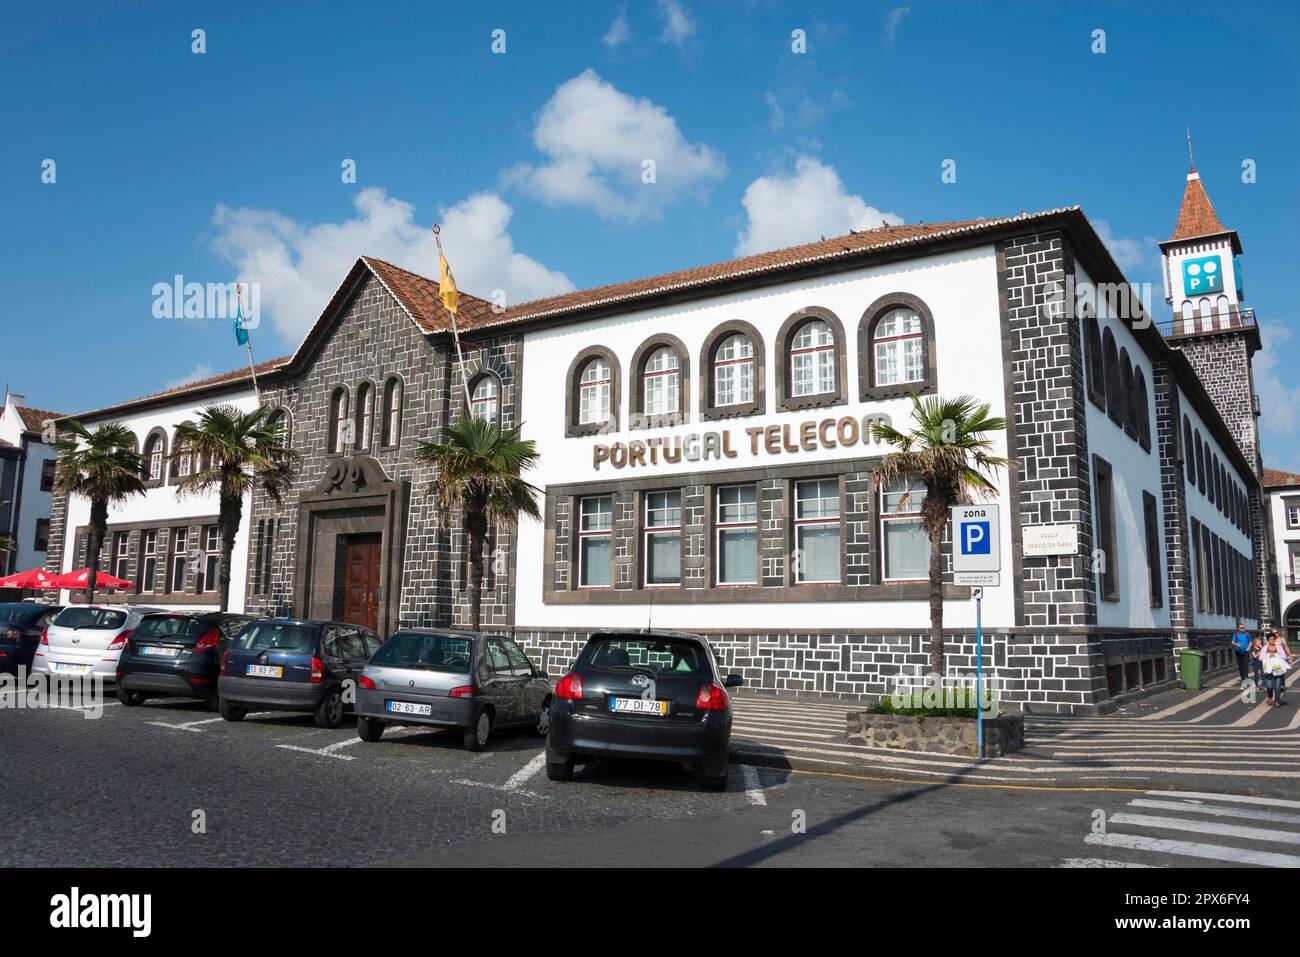 Telecom, Ponta Delgada, Sao Miguel, Azores, Portugal Stock Photo